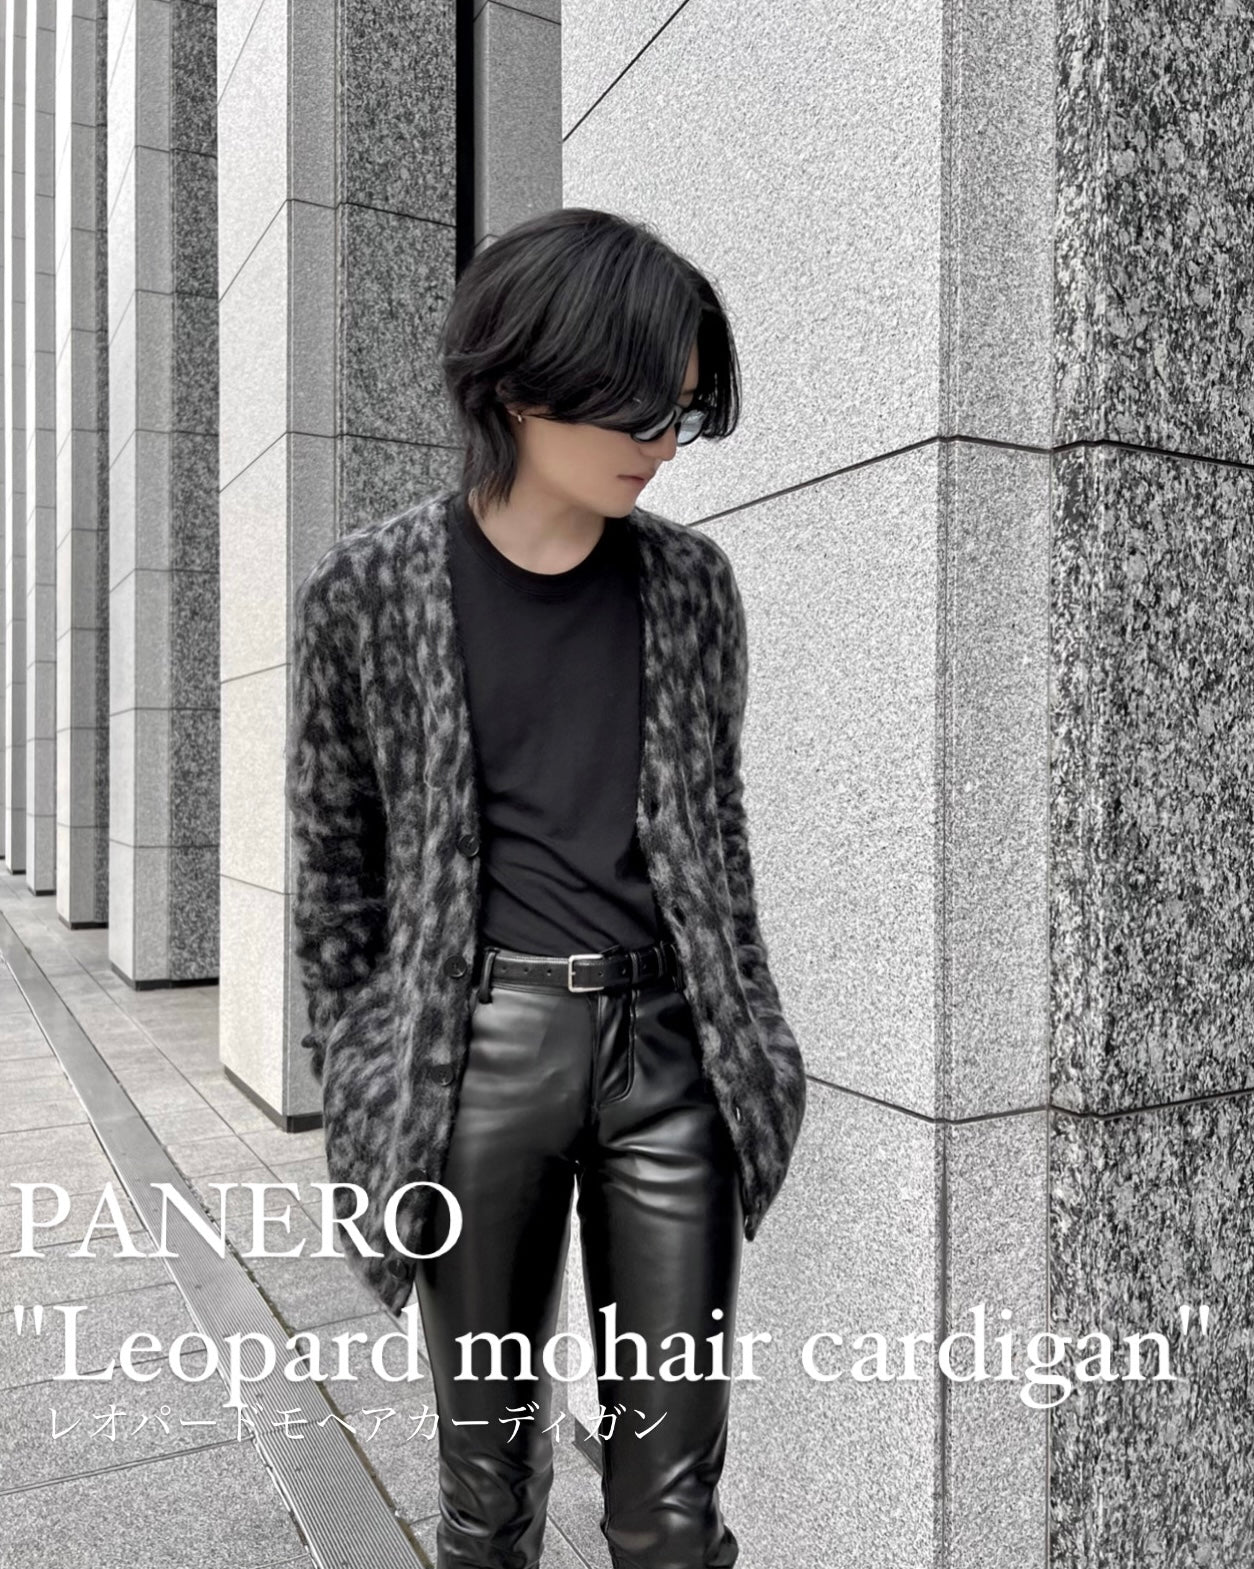 即納】“Leopard mohair cardigan“ (ブラック) – PANERO